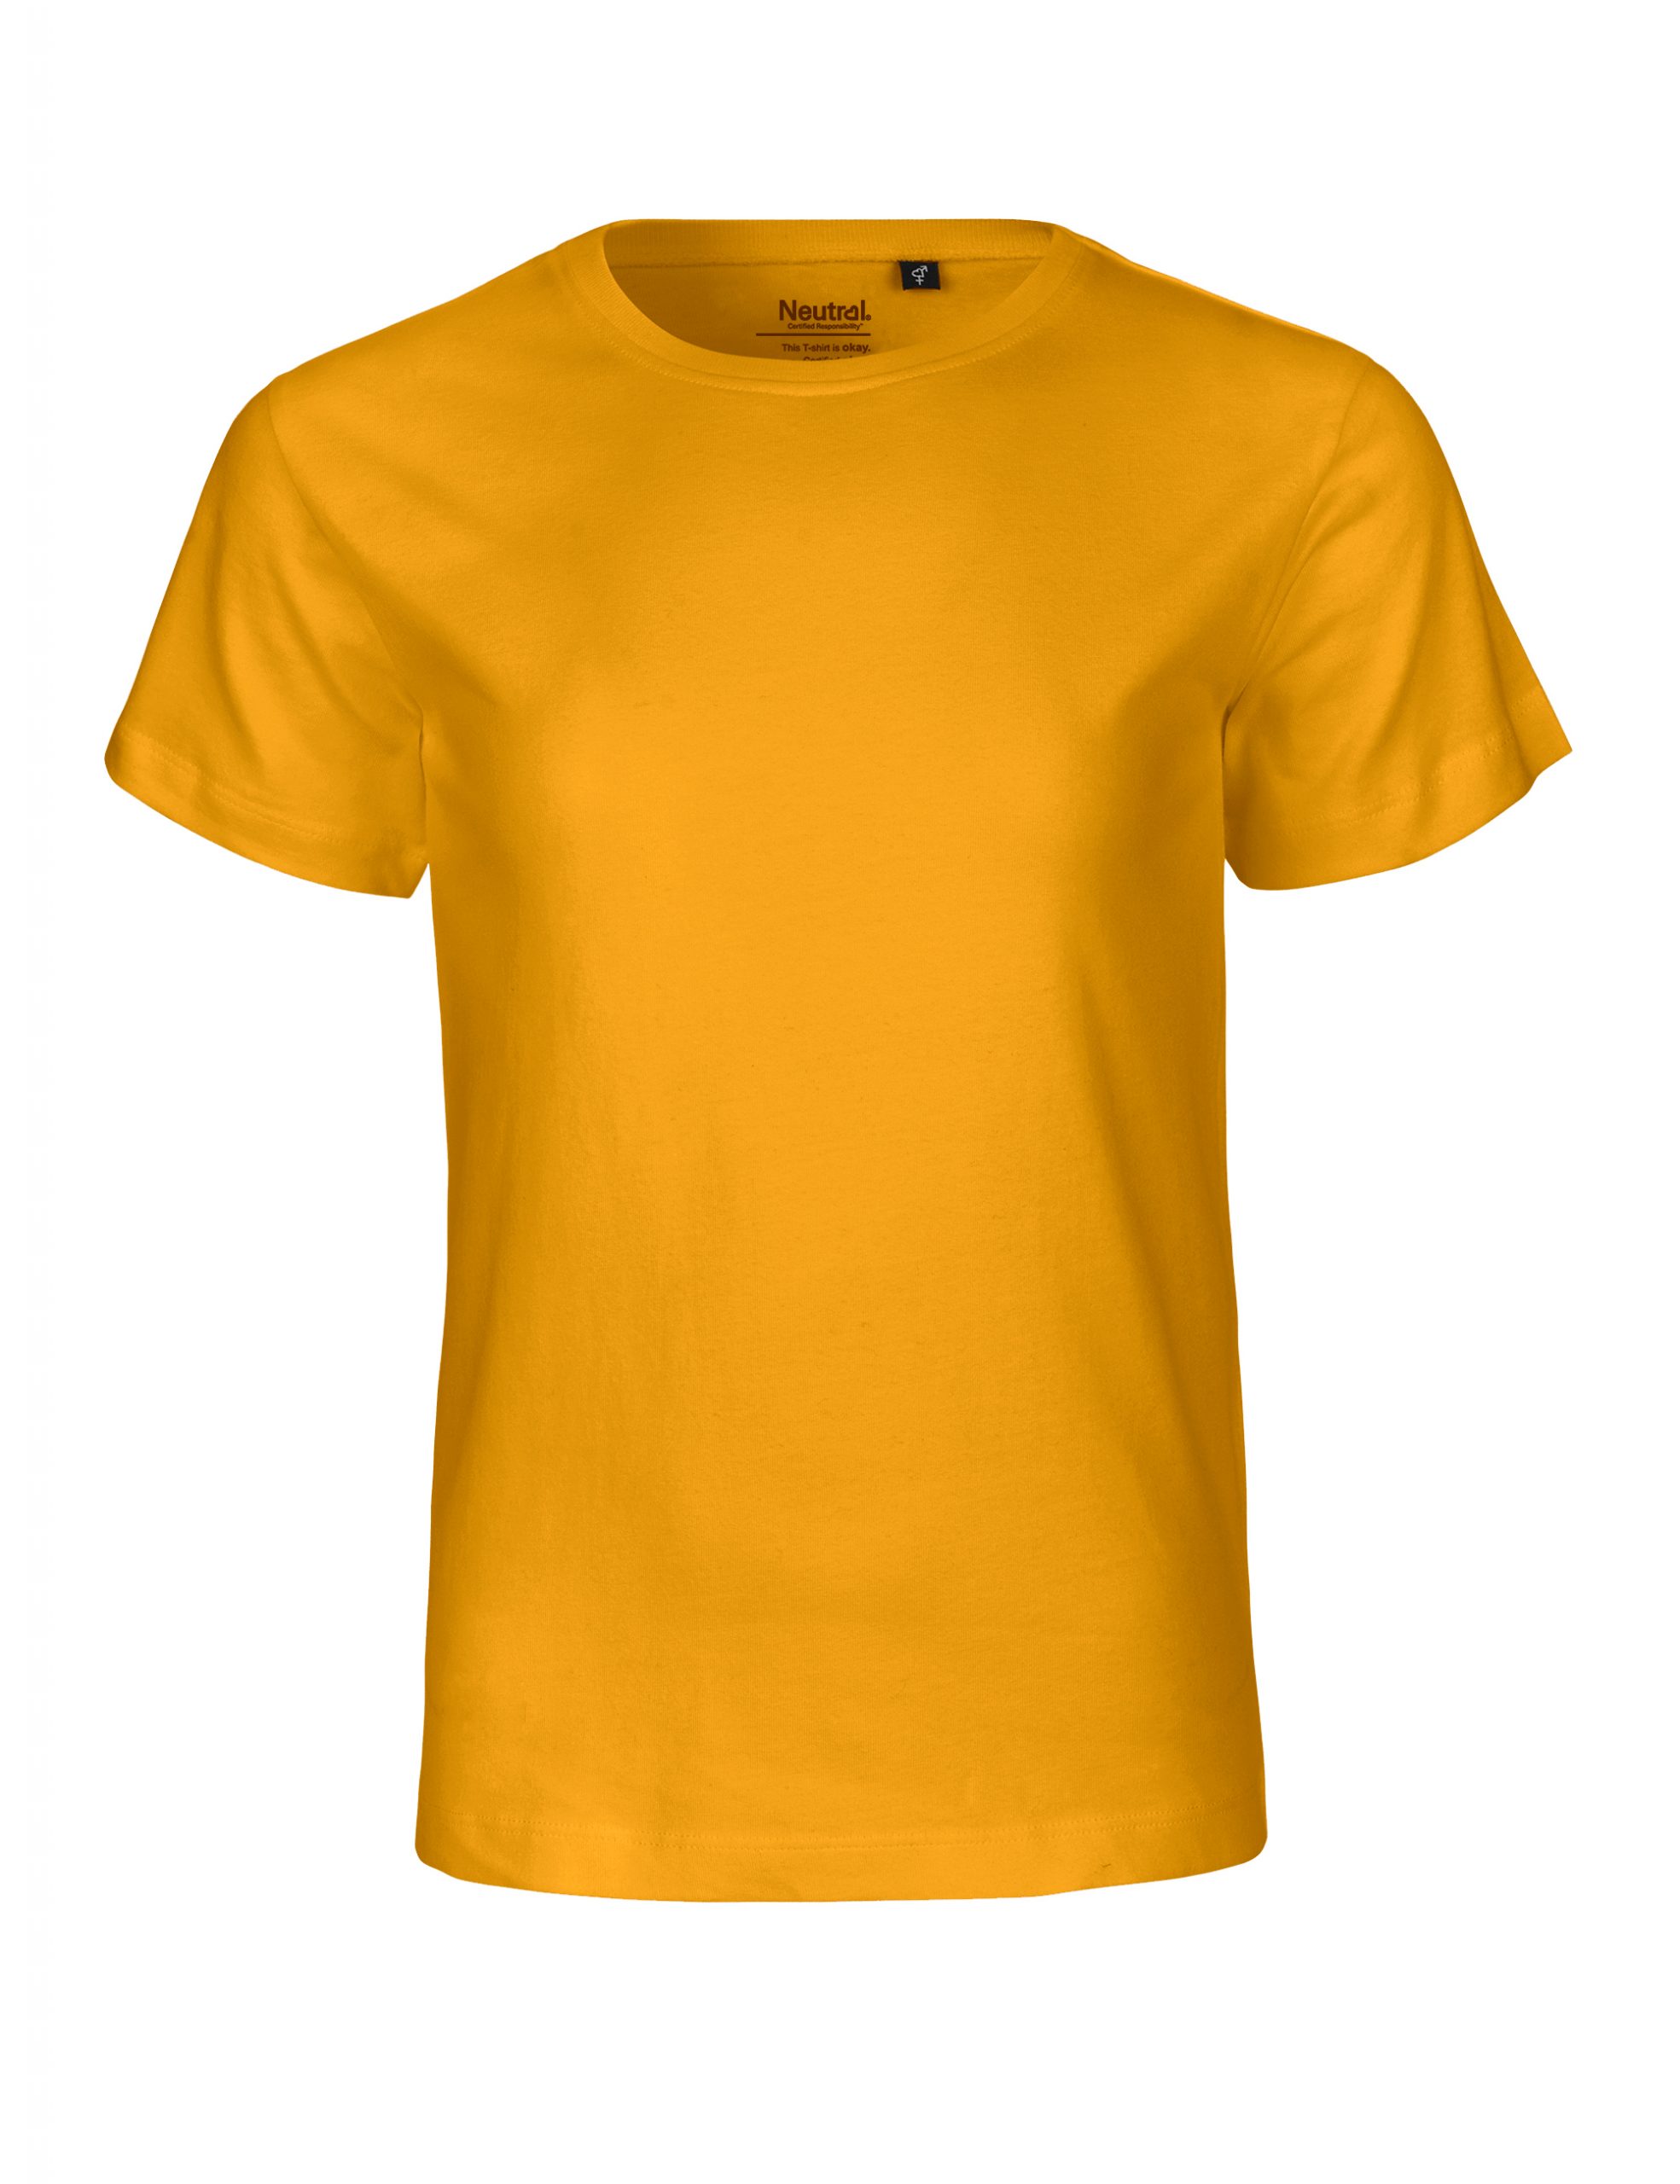 Neutral Kids T-shirt Yellow